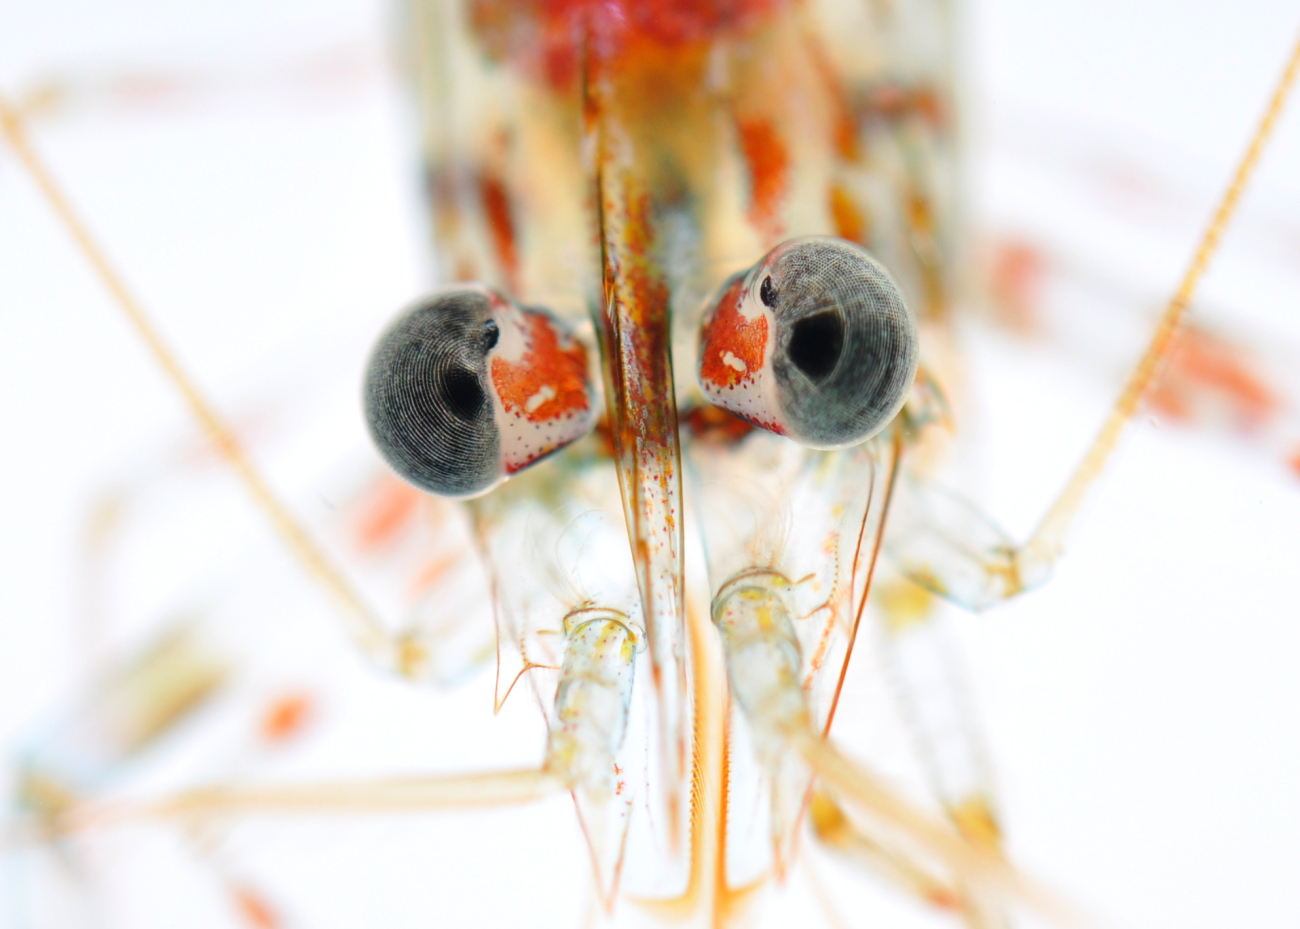 A closeup of a shrimp's eyes